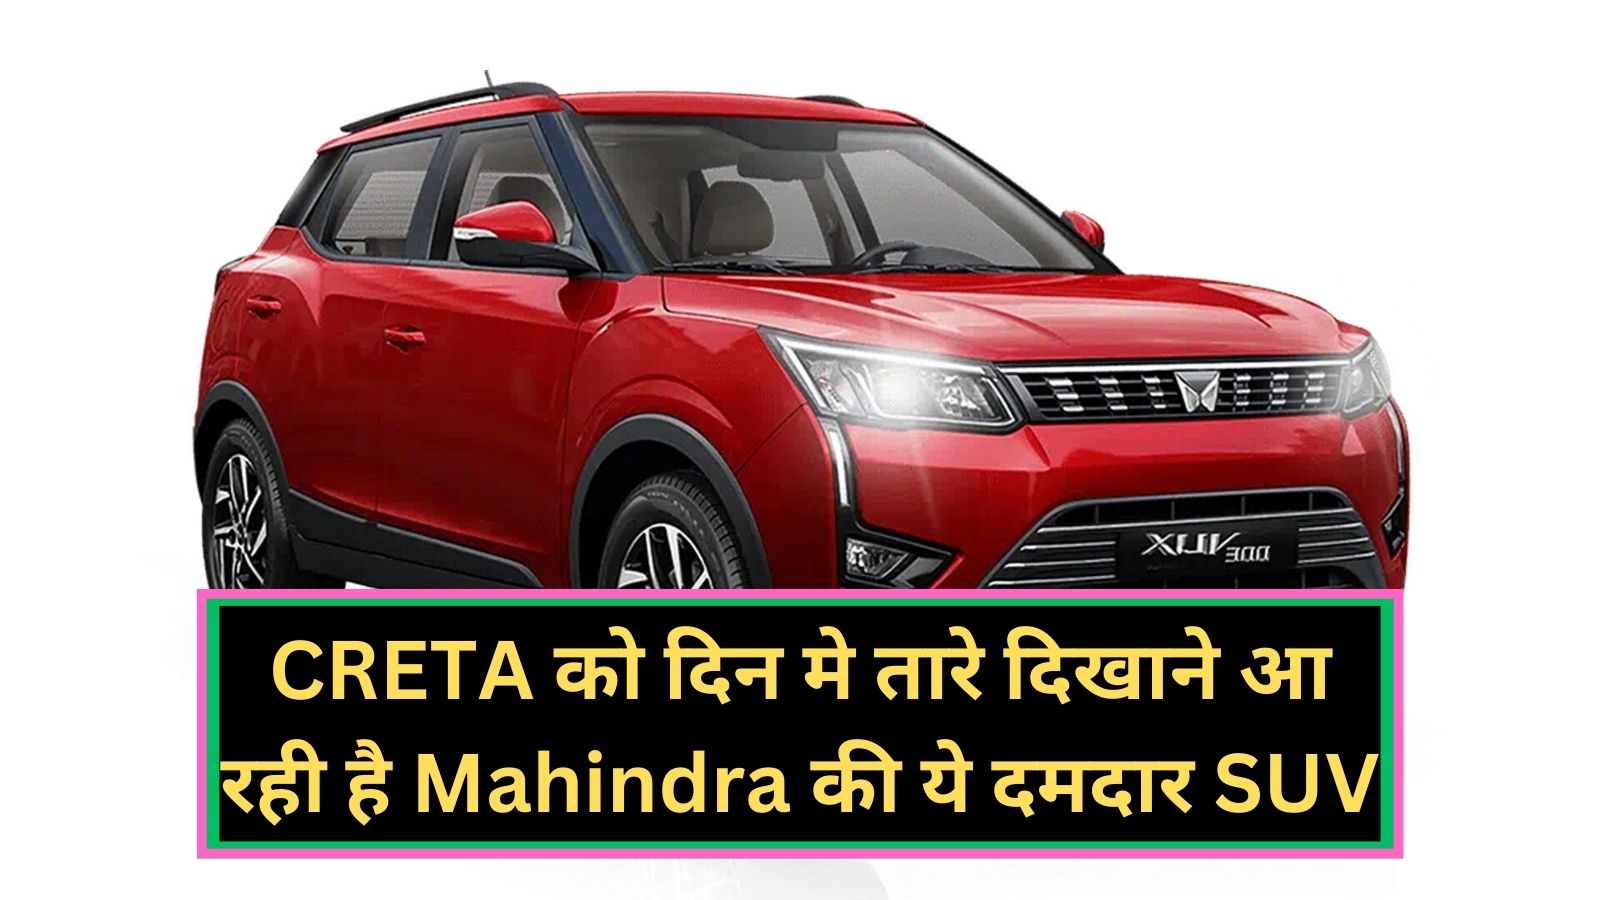 Mahindra XUV 300: CRETA को दिन मे तारे दिखाने आ रही है Mahindra की ये दमदार SUV, जानिए इसके दमदार फीचर्स और कीमत के बारे मे